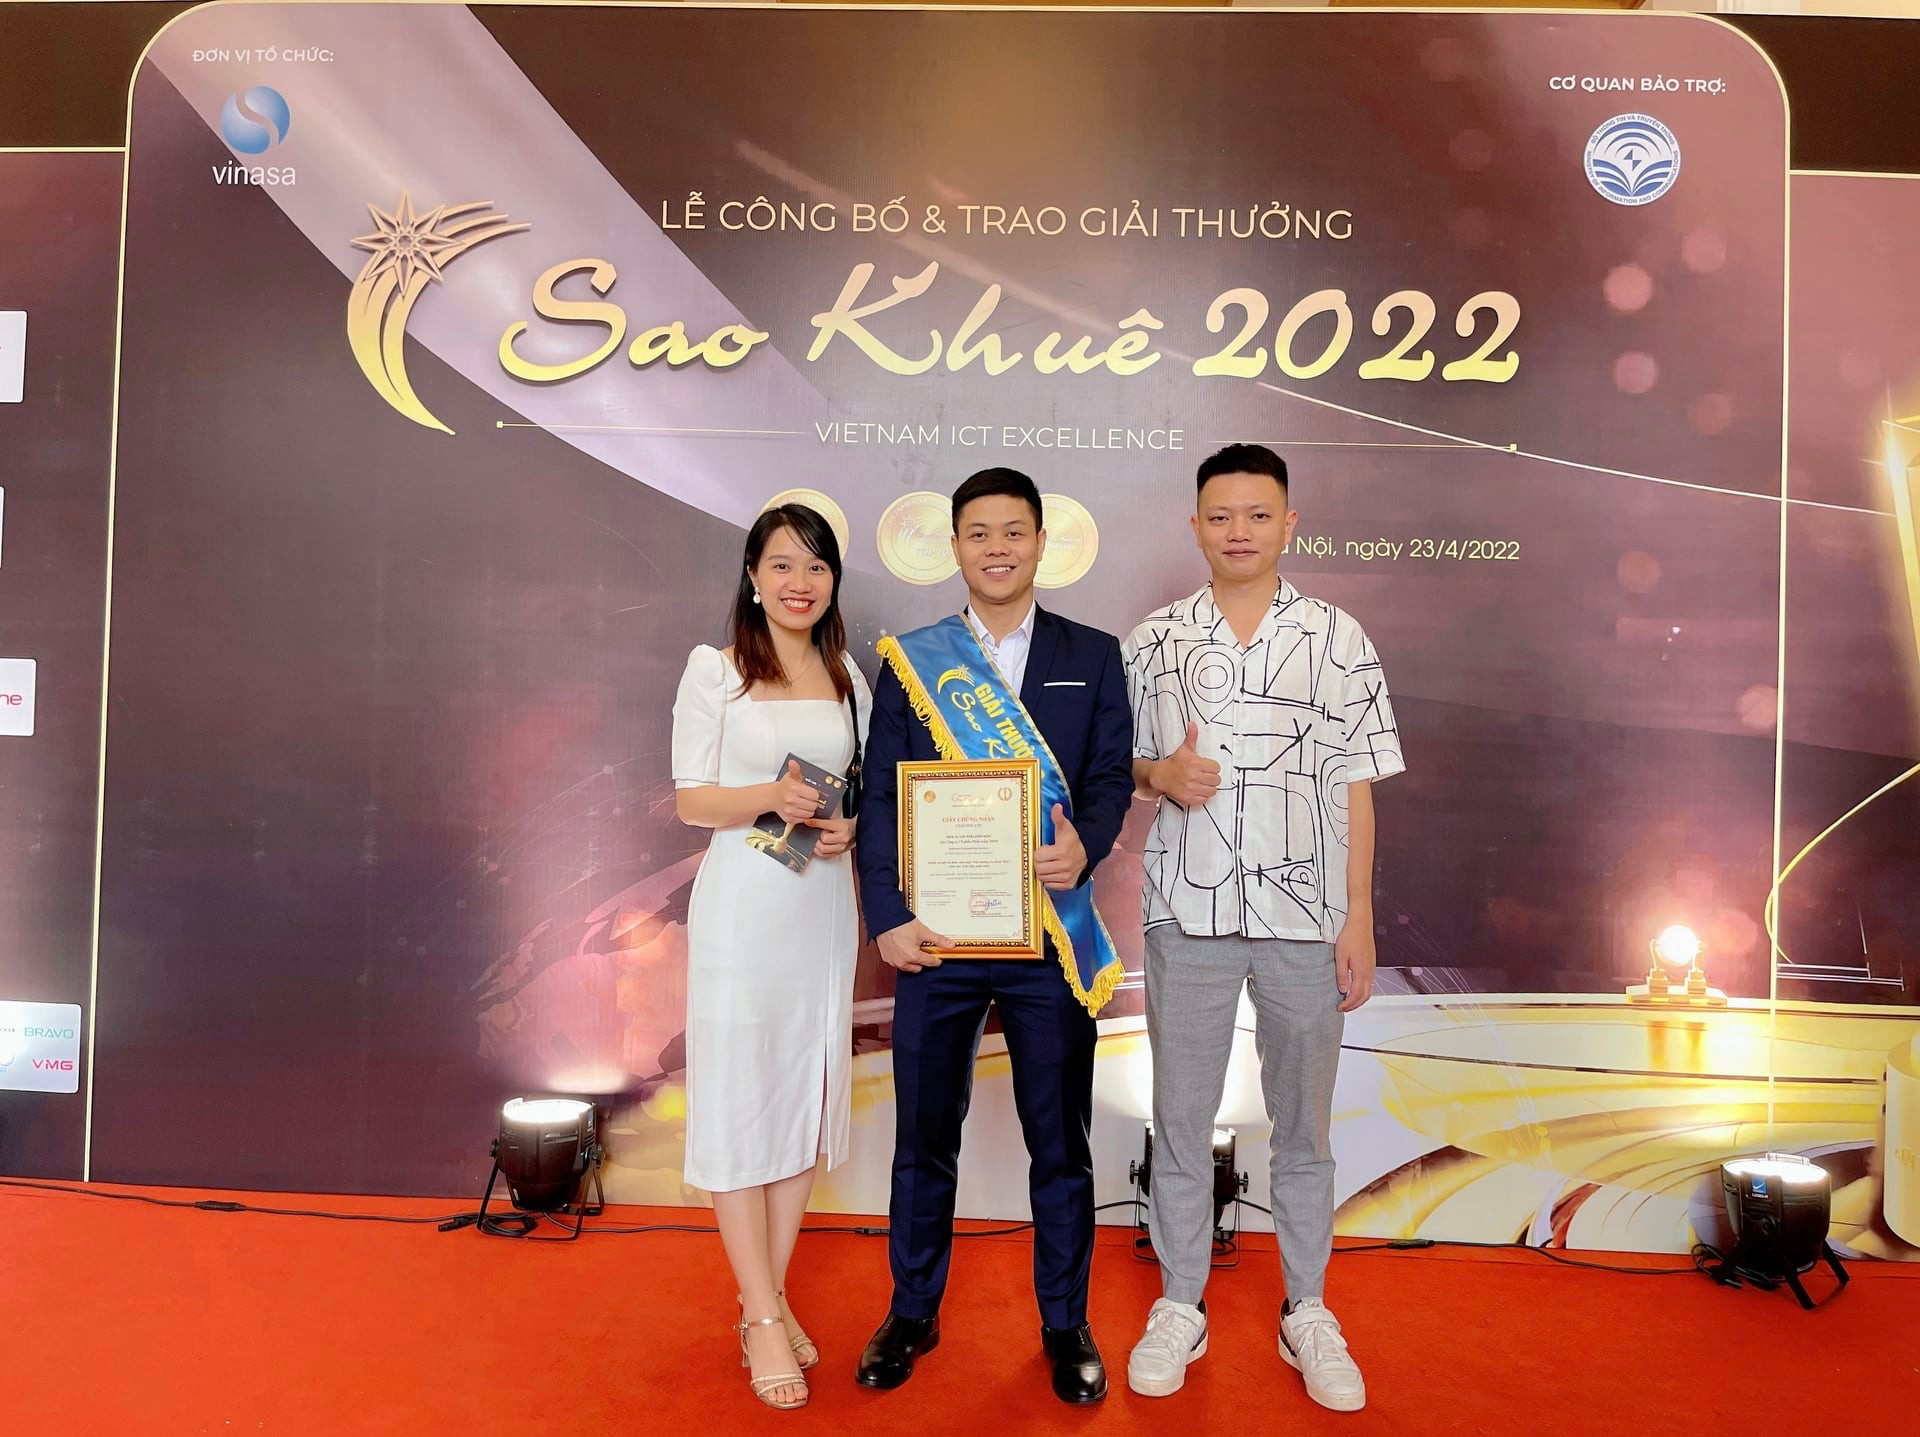 Đại diện của MOR Software đi nhận giải thưởng Sao Khuê 2022